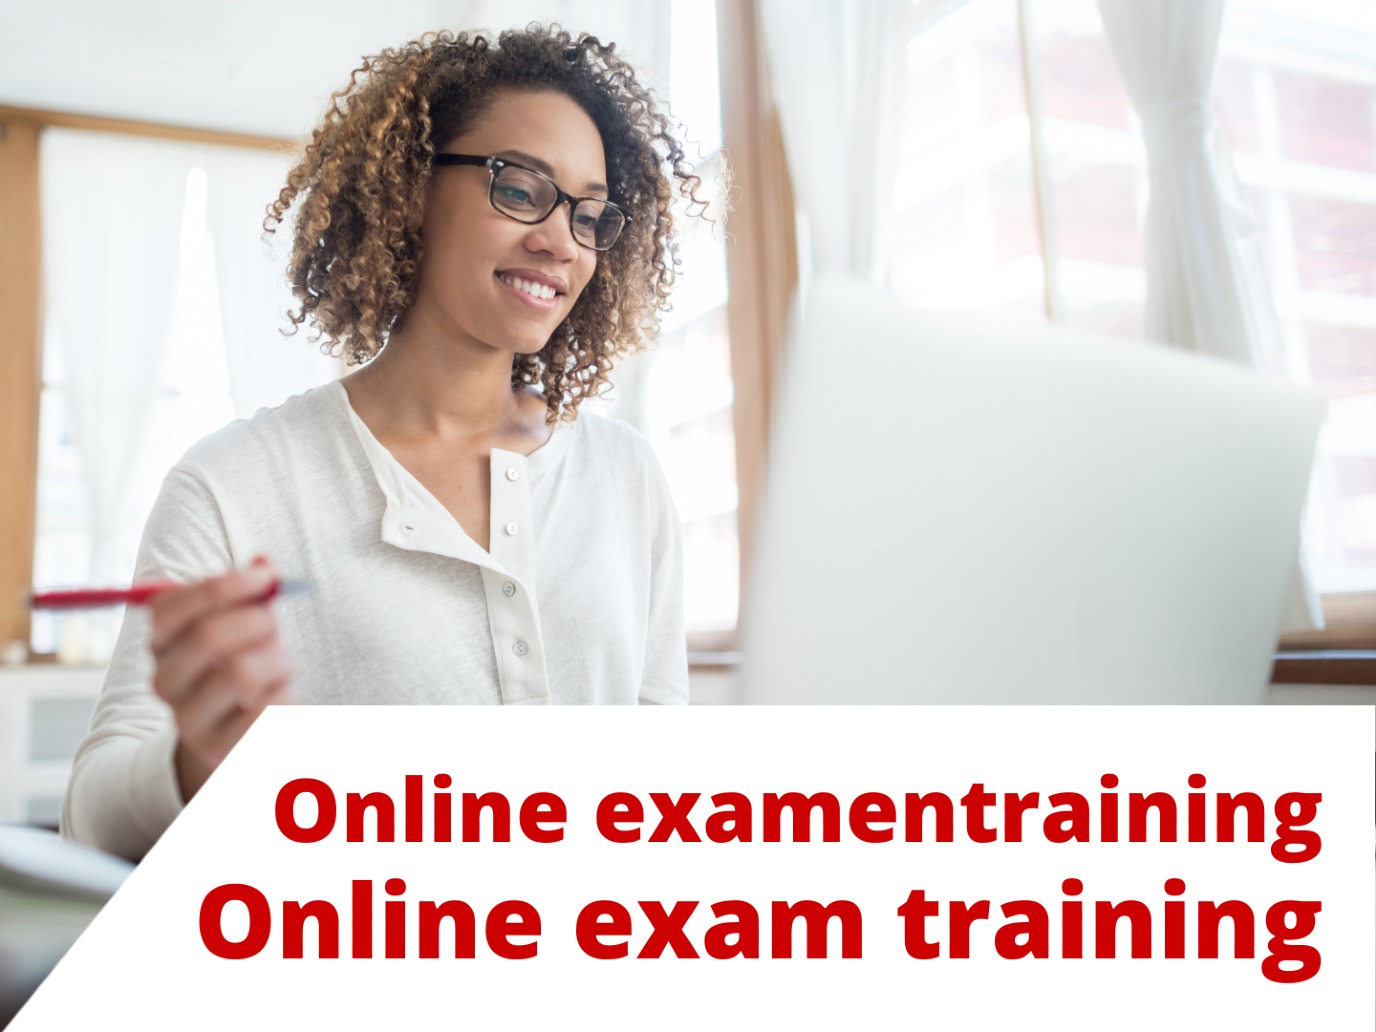 Online examentraining: Staatexamen NT2-II